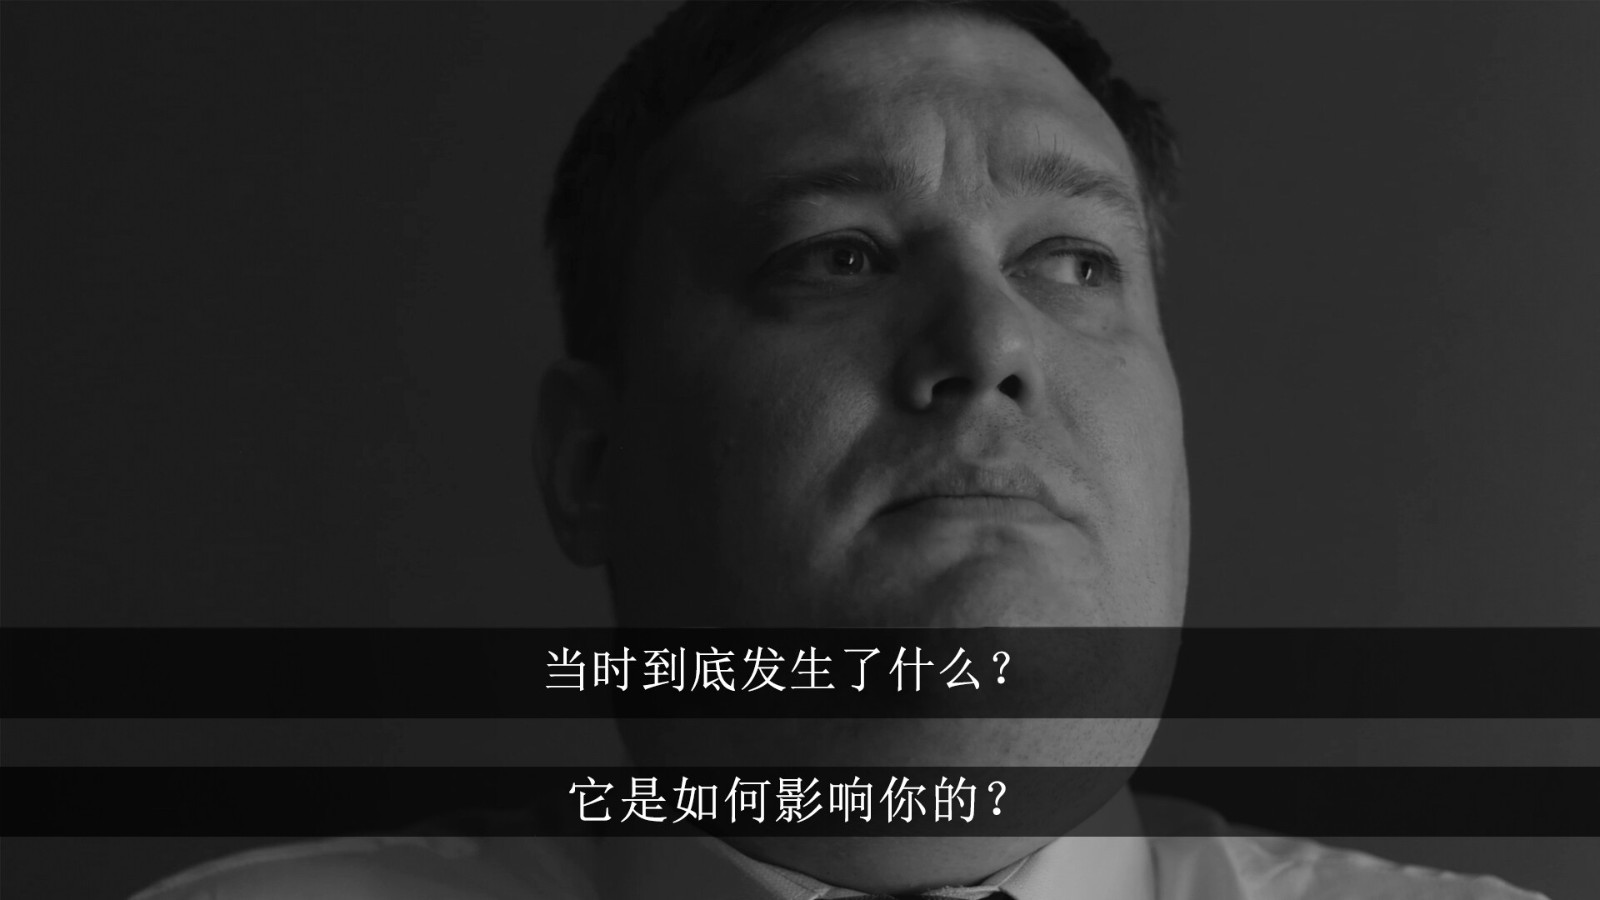 互动式电影《俄罗斯精神田园》Steam页面上线 支持简体中文 二次世界 第6张